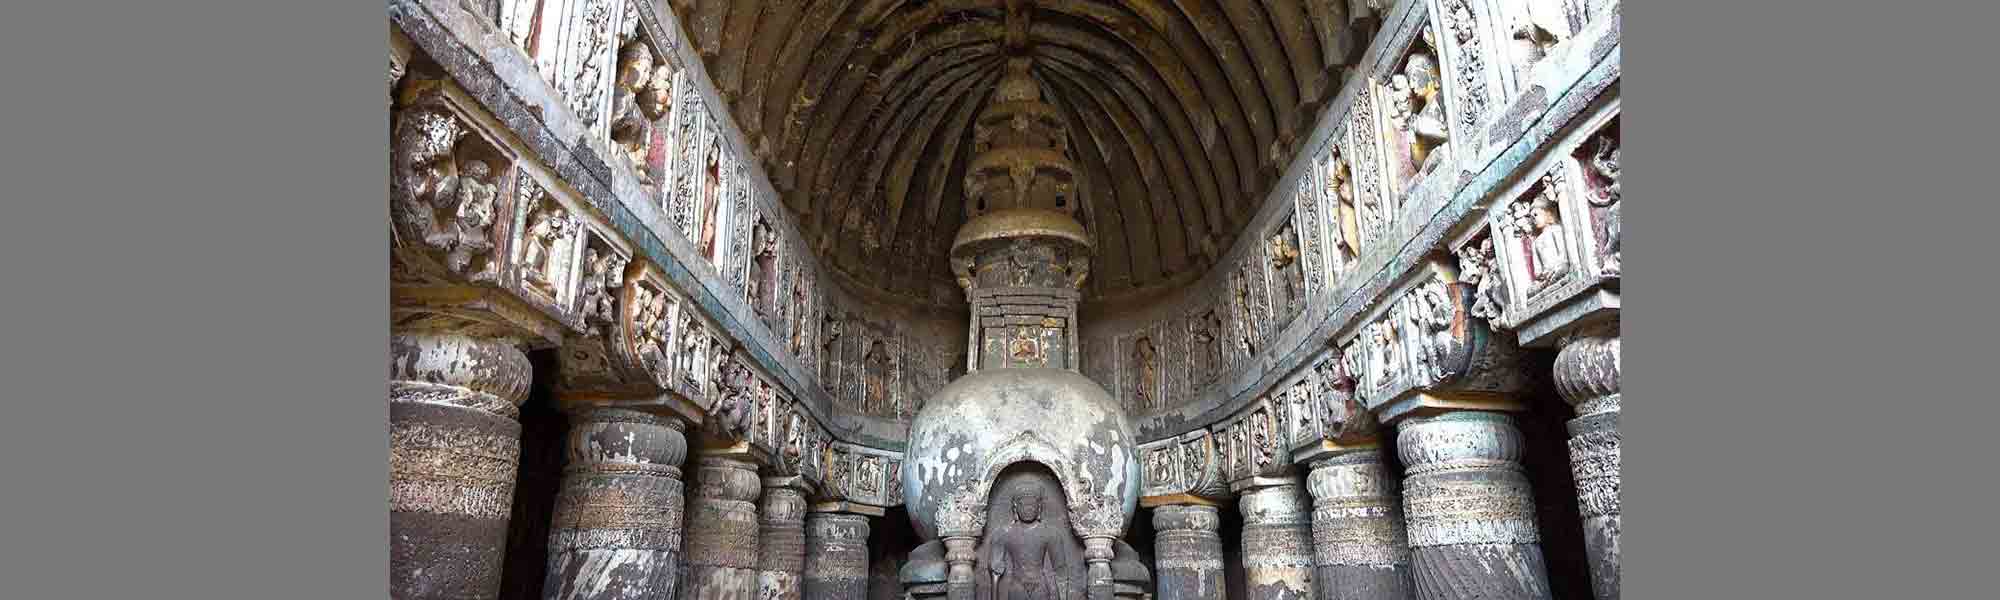 Ajanta Caves, Maharashtra, India [Amazing Places 4K] - YouTube